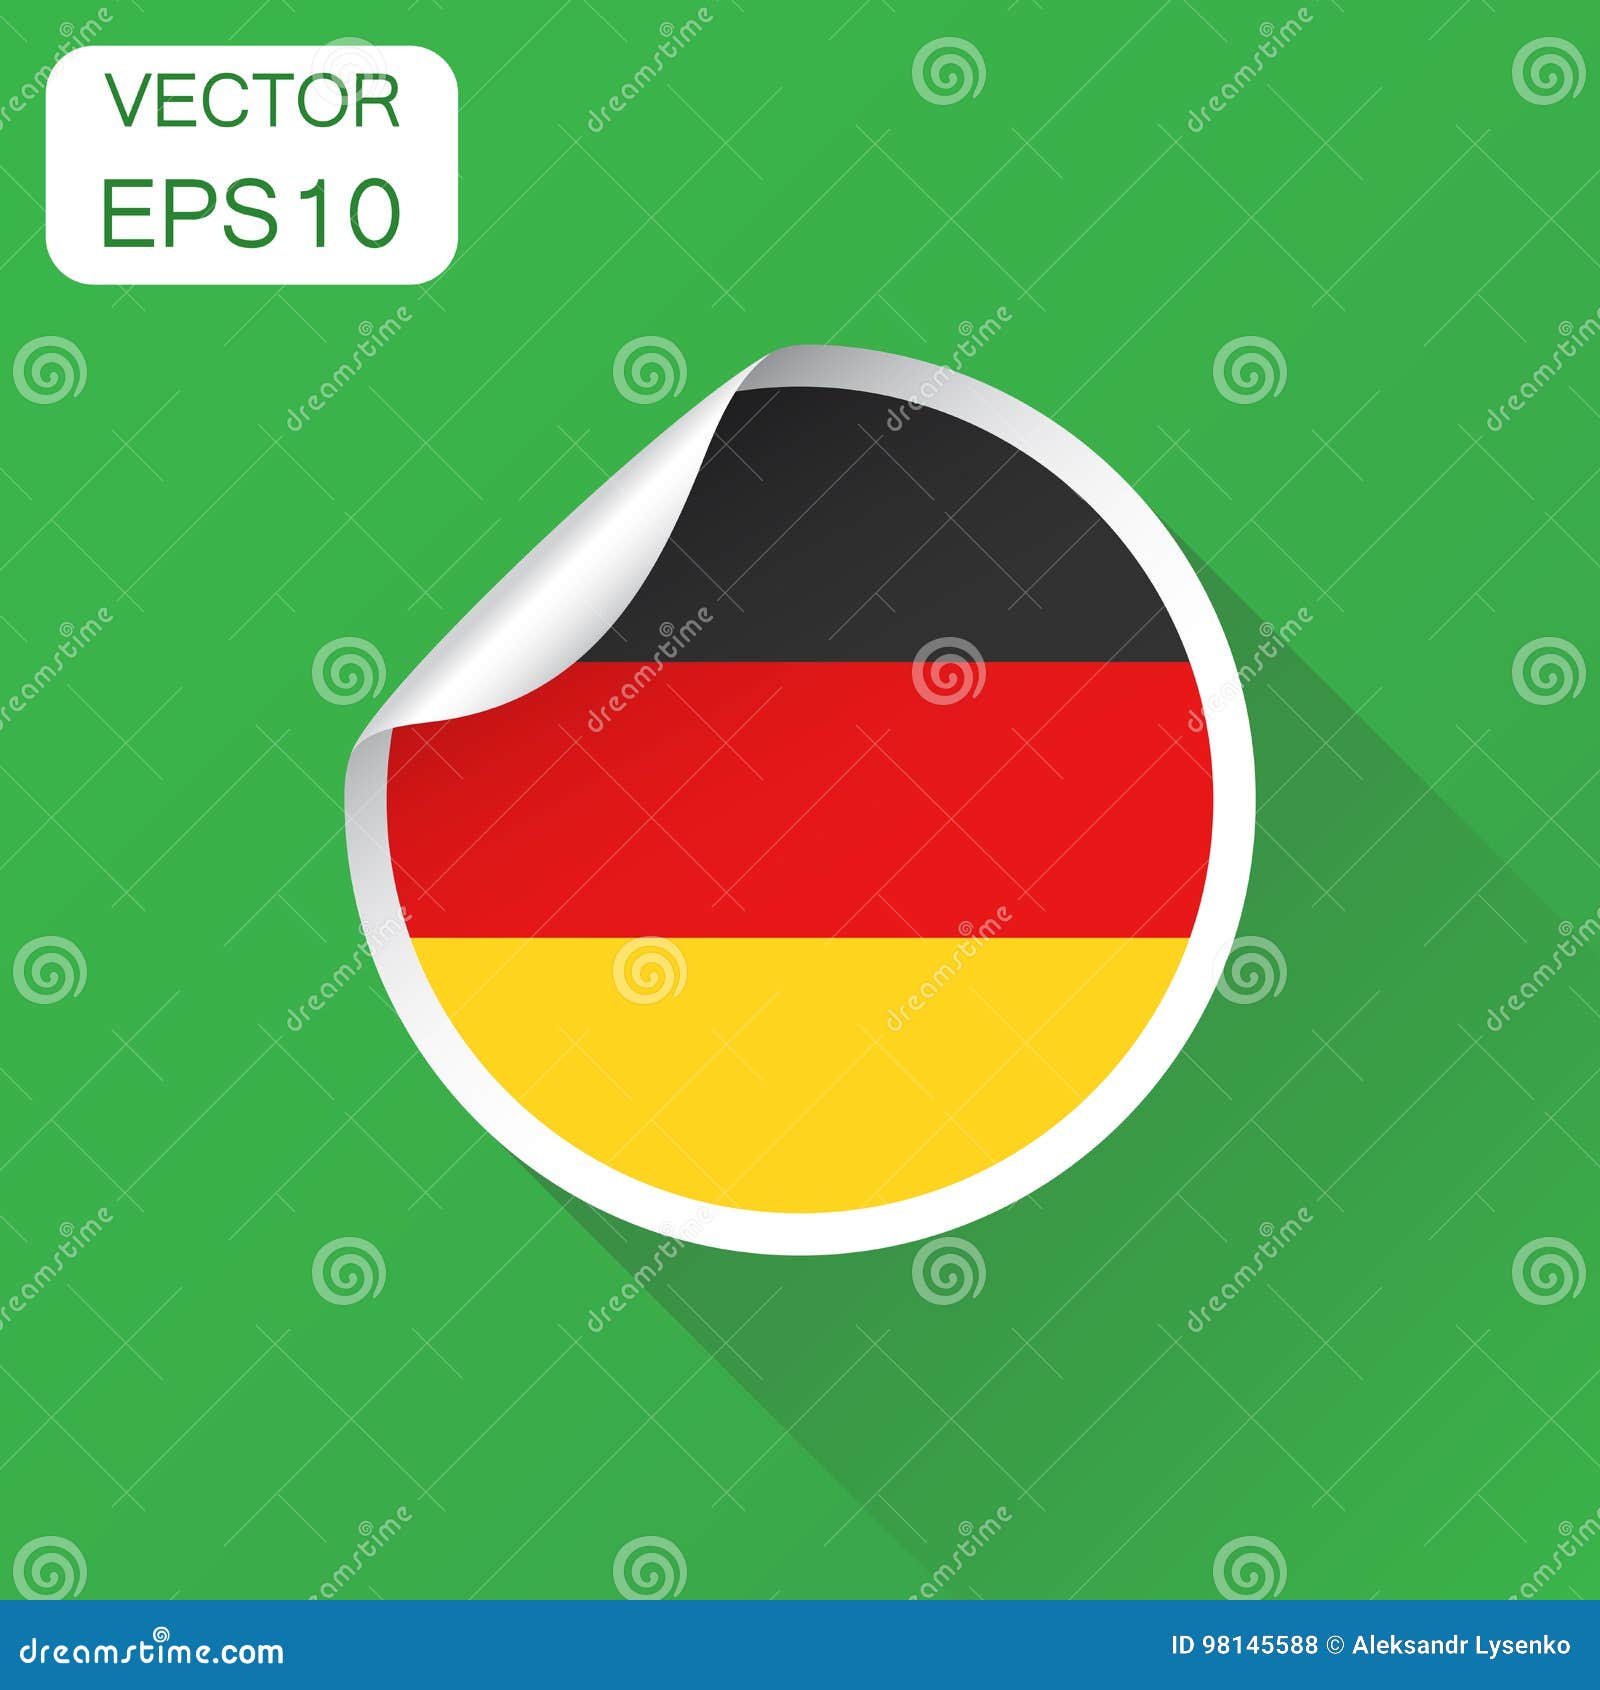 Hình ảnh cờ Đức với màu đen, đỏ và vàng sẽ truyền tải đến bạn sự uy nghiêm, sự tinh tế và sự chính trực. Khám phá một trong những cờ quốc gia được yêu thích nhất trên thế giới này ngay hôm nay.